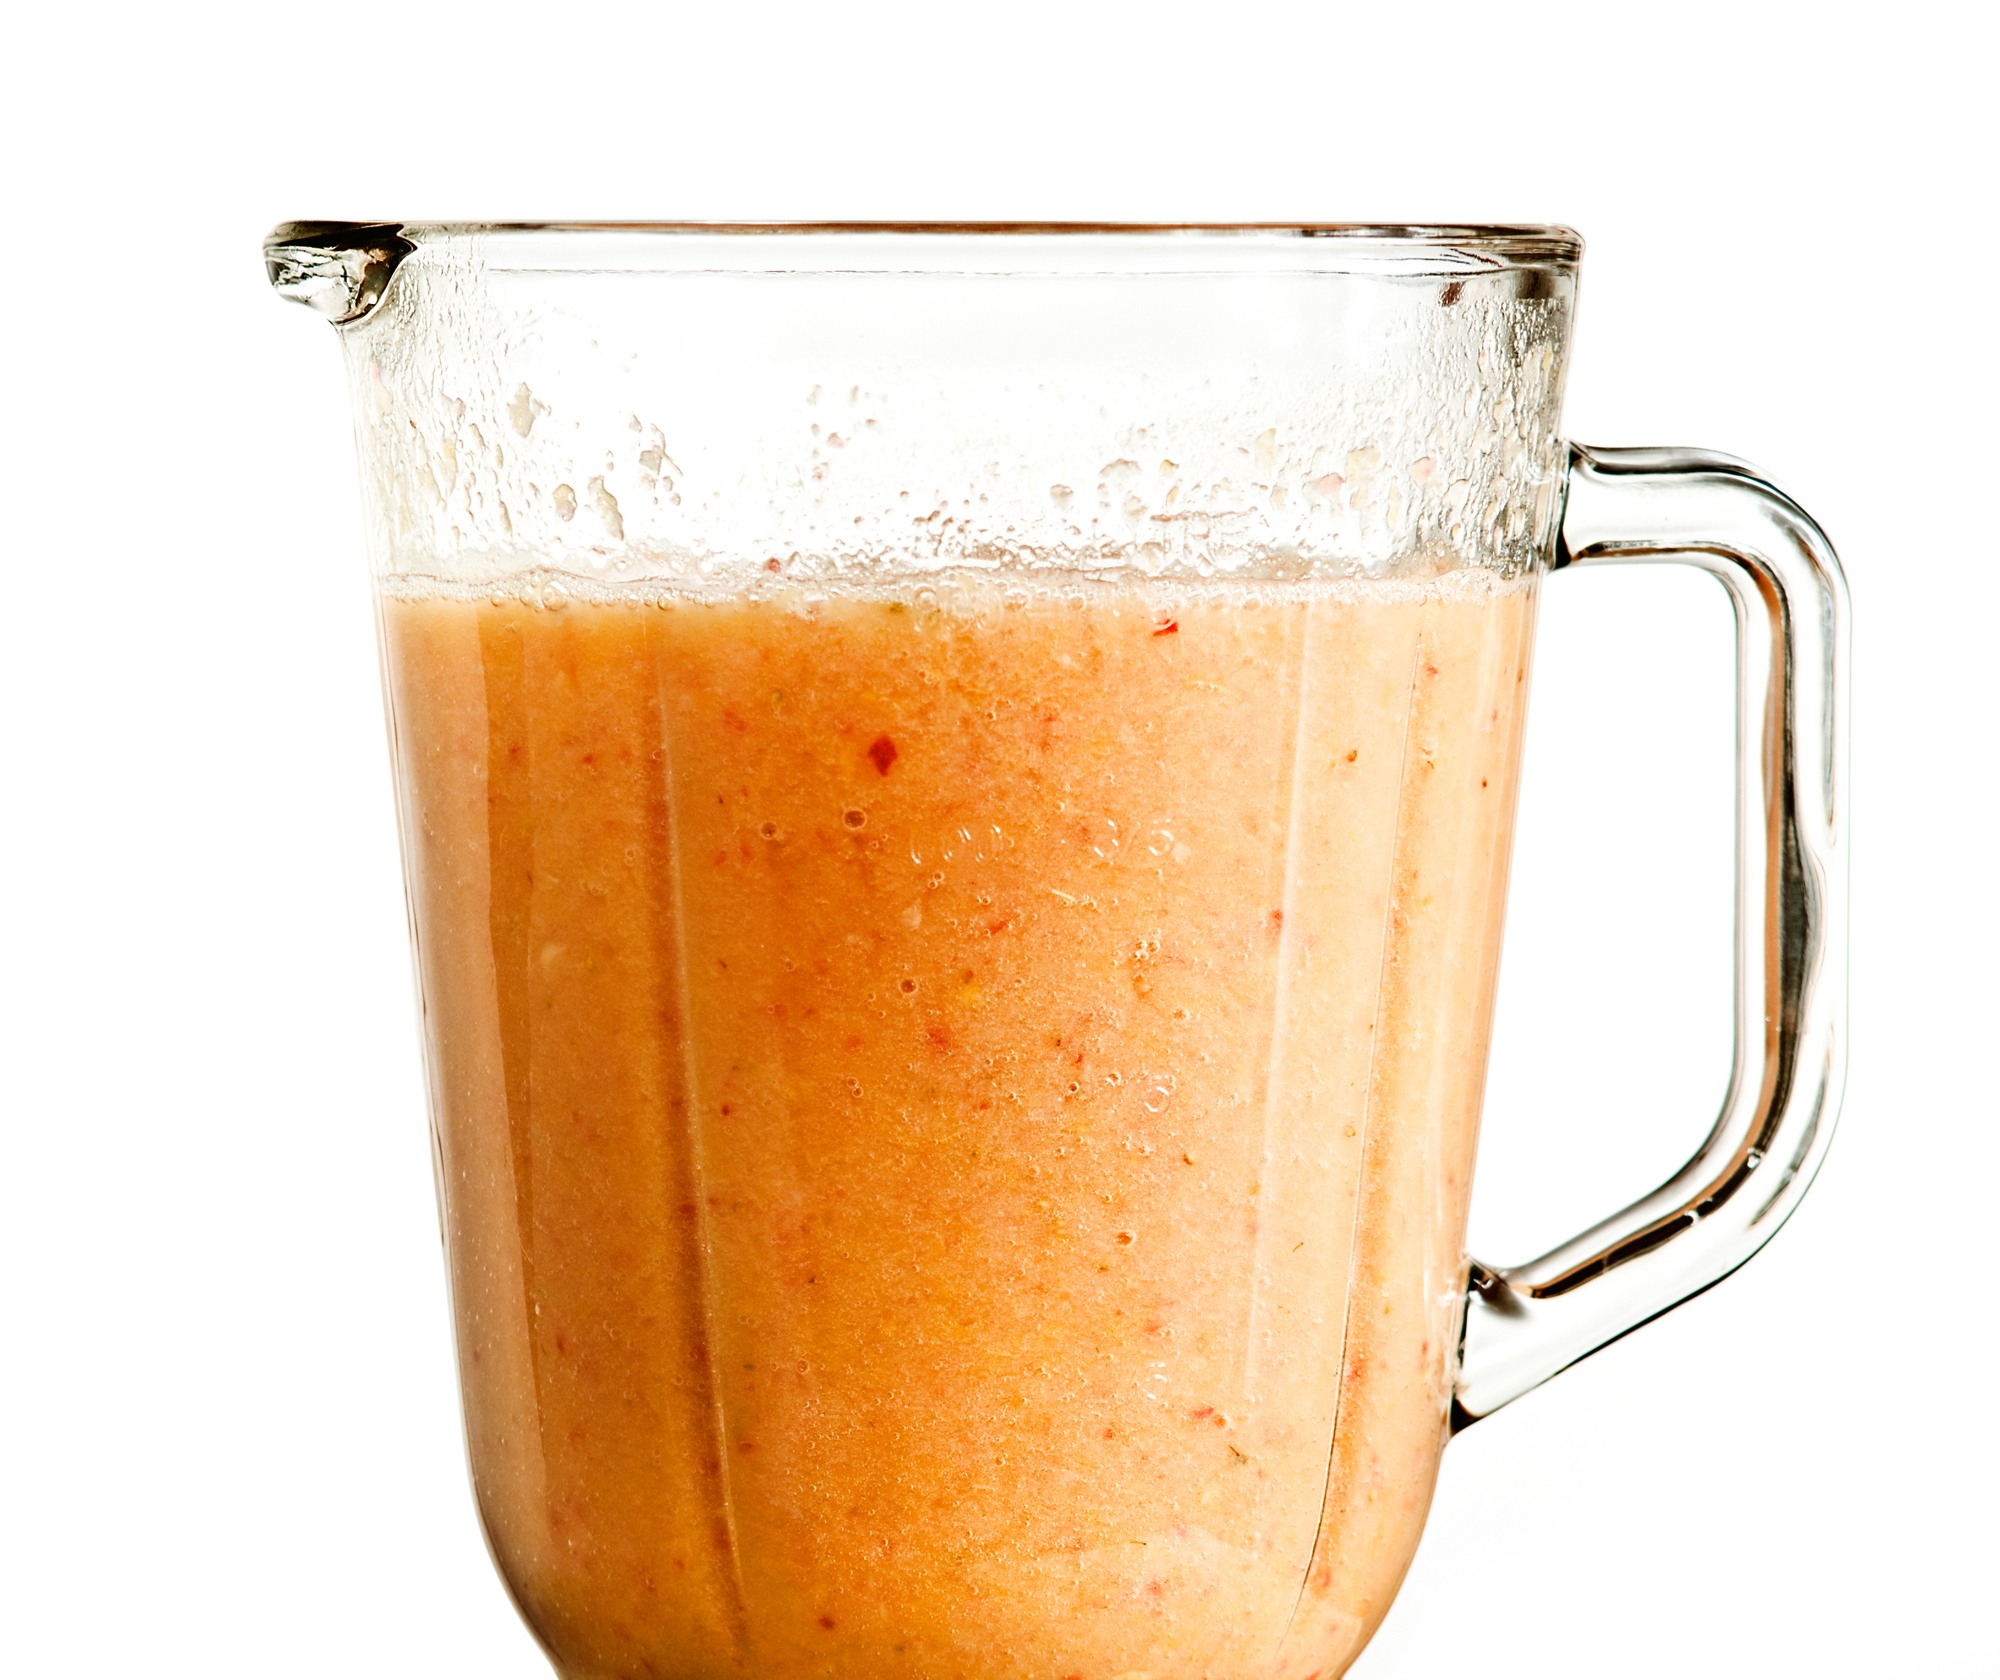 orange smoothie in a blender June 2020